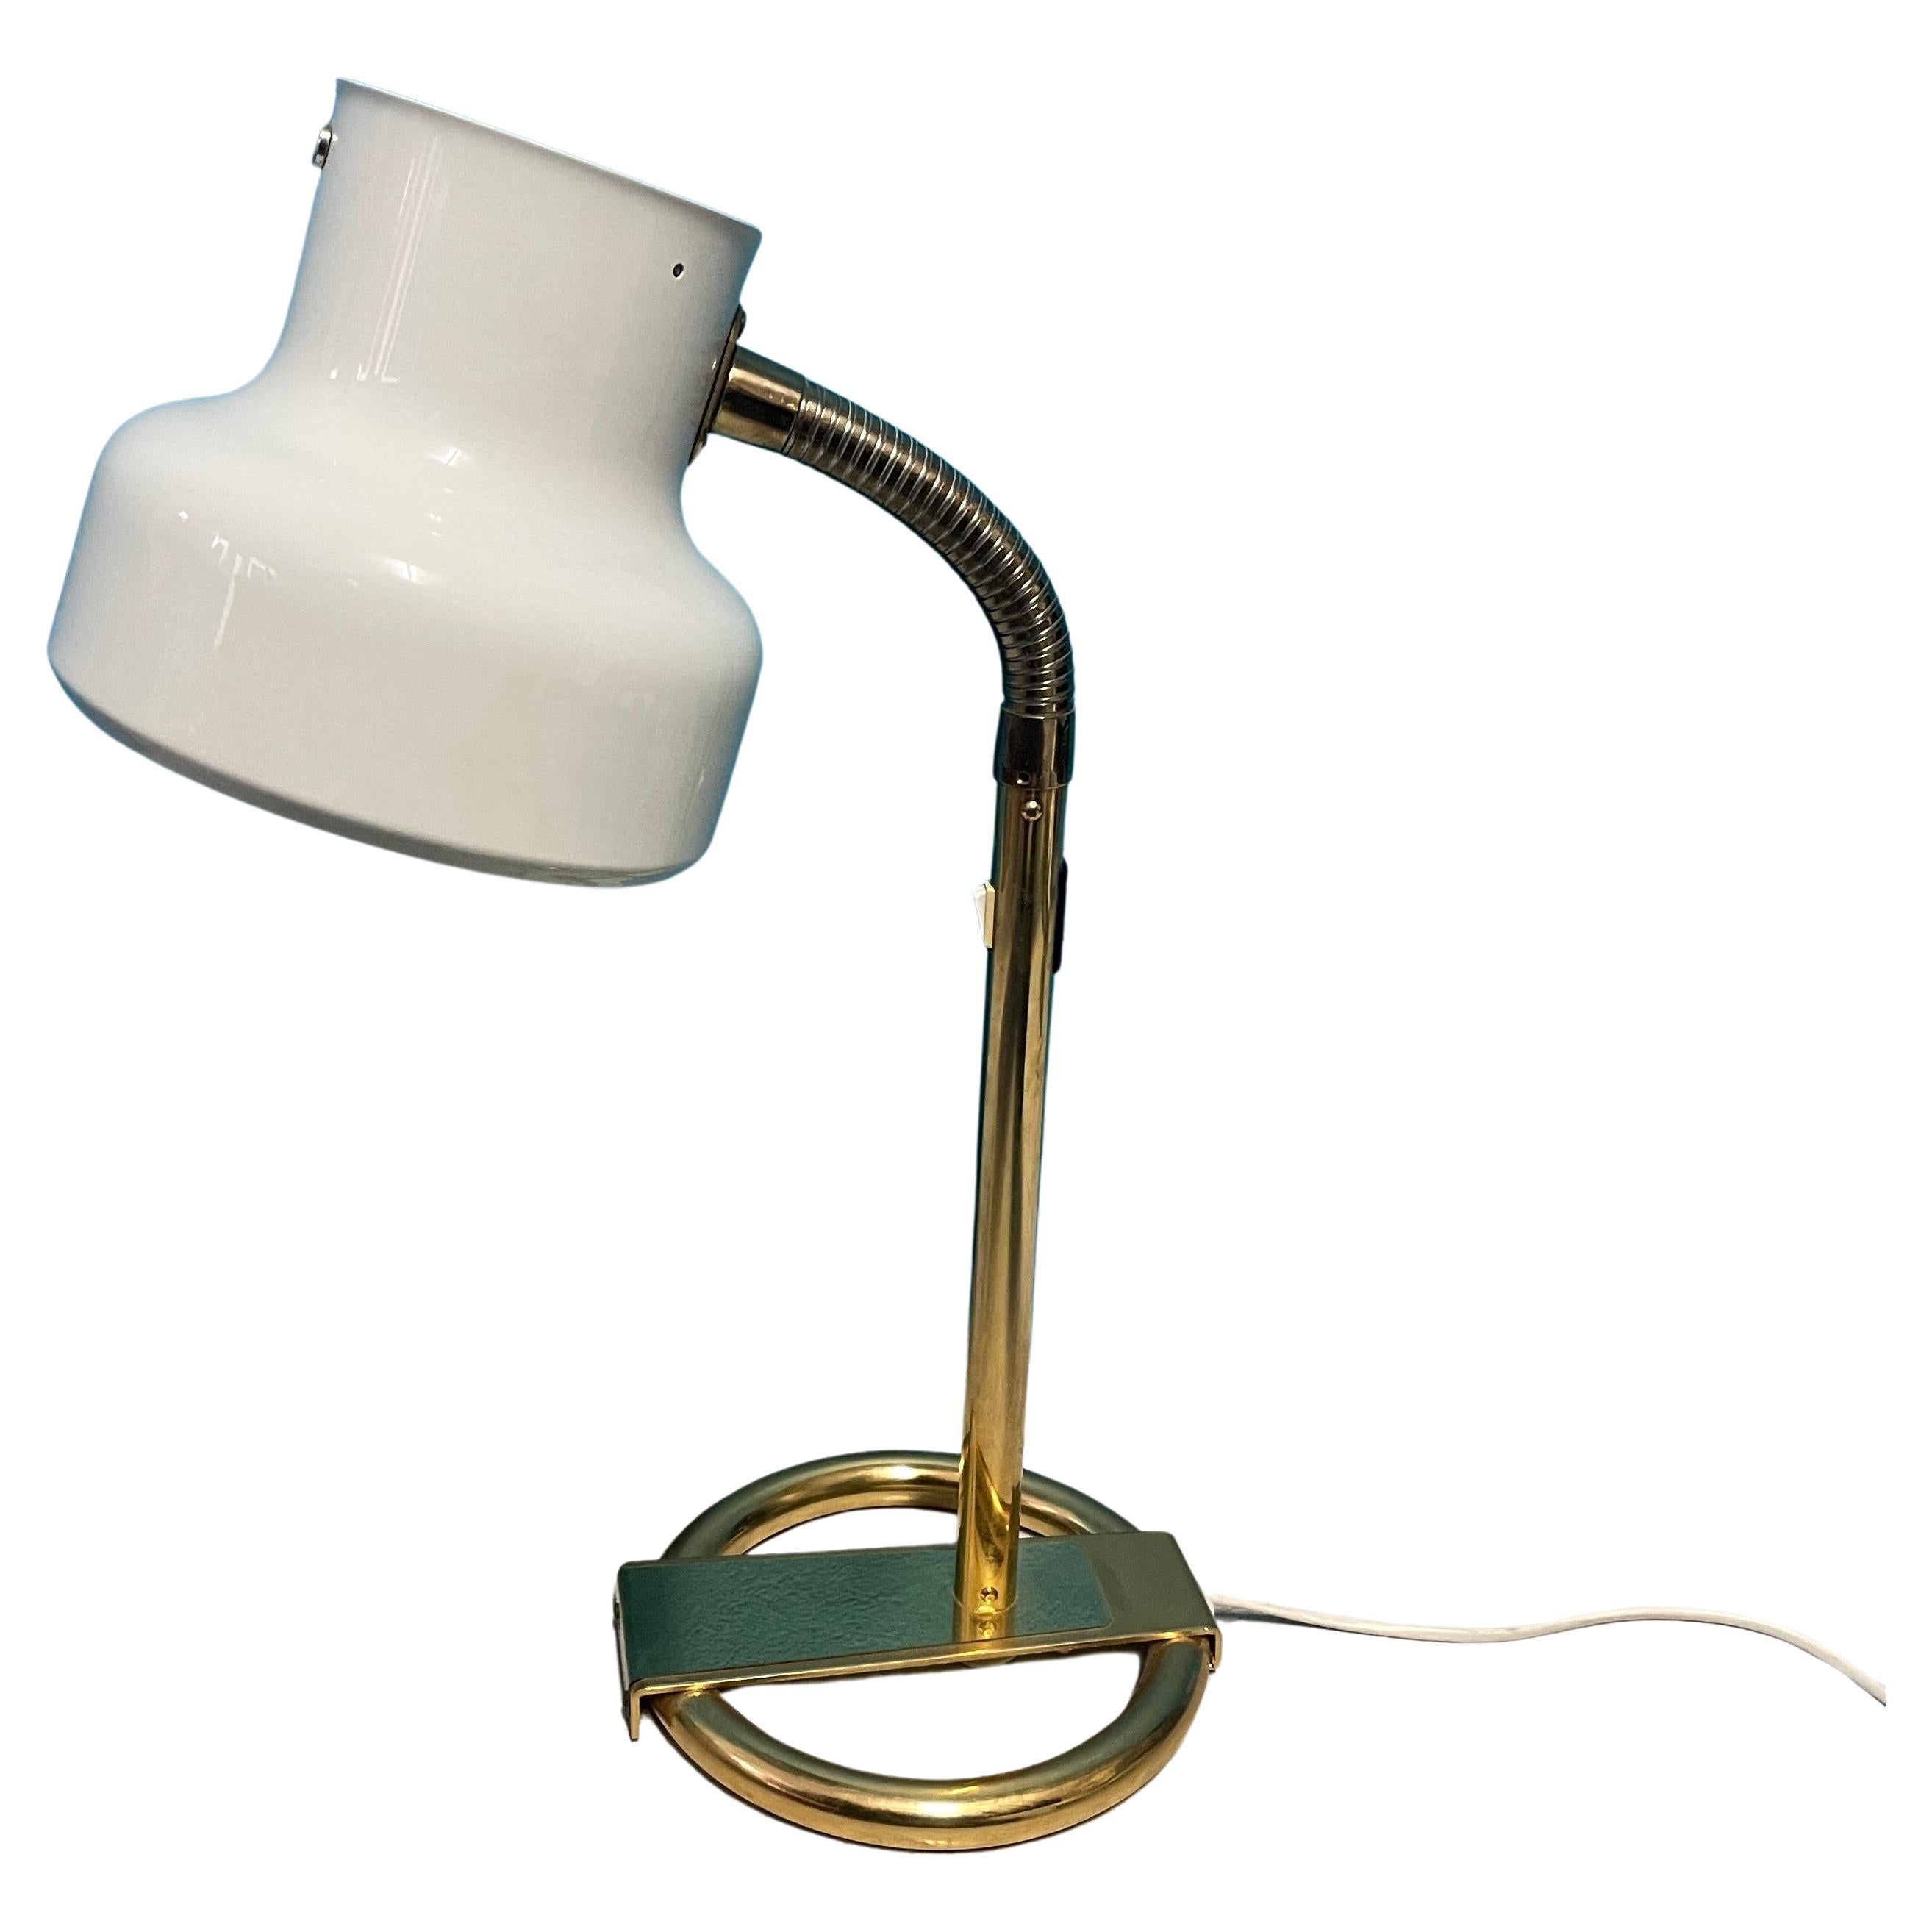 Lampe de table iconique de la marque suédoise Bumling. Série de lampes Bumling Conçue en 1968 par Anders Pehrson pour Ateljé Lyktan, Ahus, Suède.

Cette lampe présente une combinaison de couleurs magnifique et intemporelle, un cadre en laiton et un